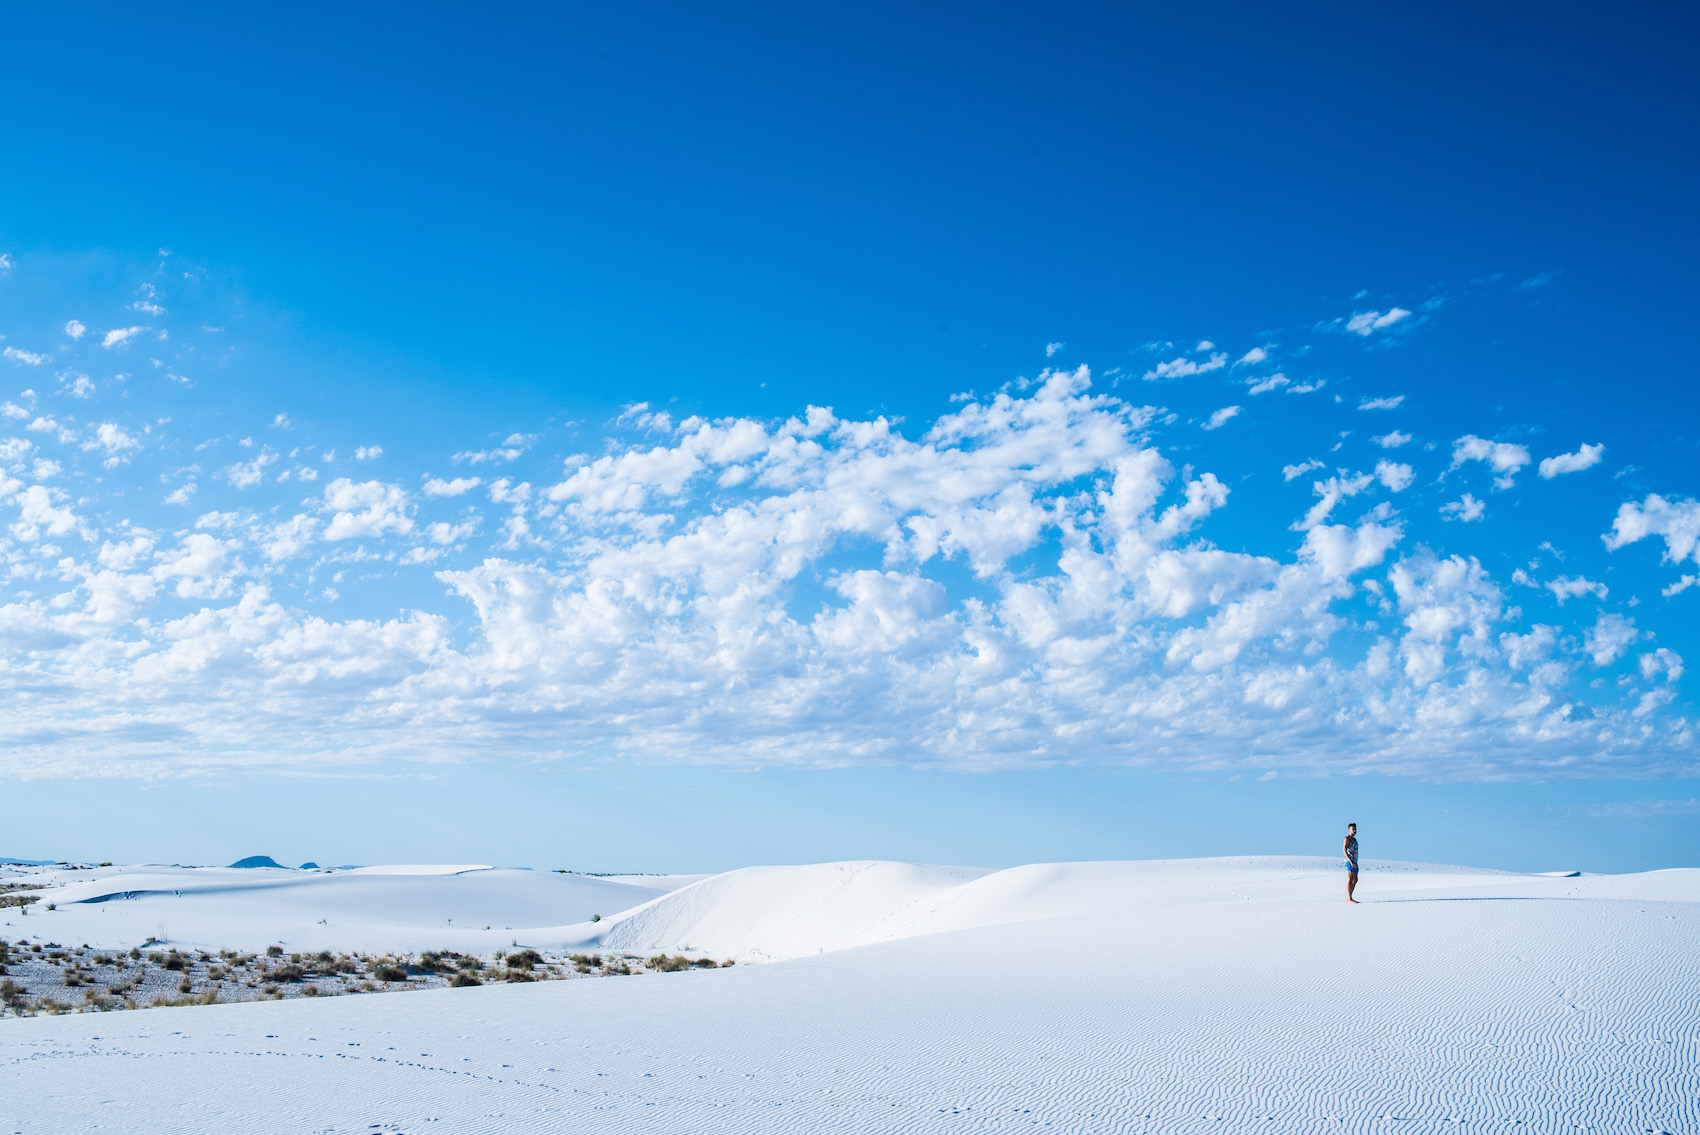 Robert Schrader in White Sands, New Mexico